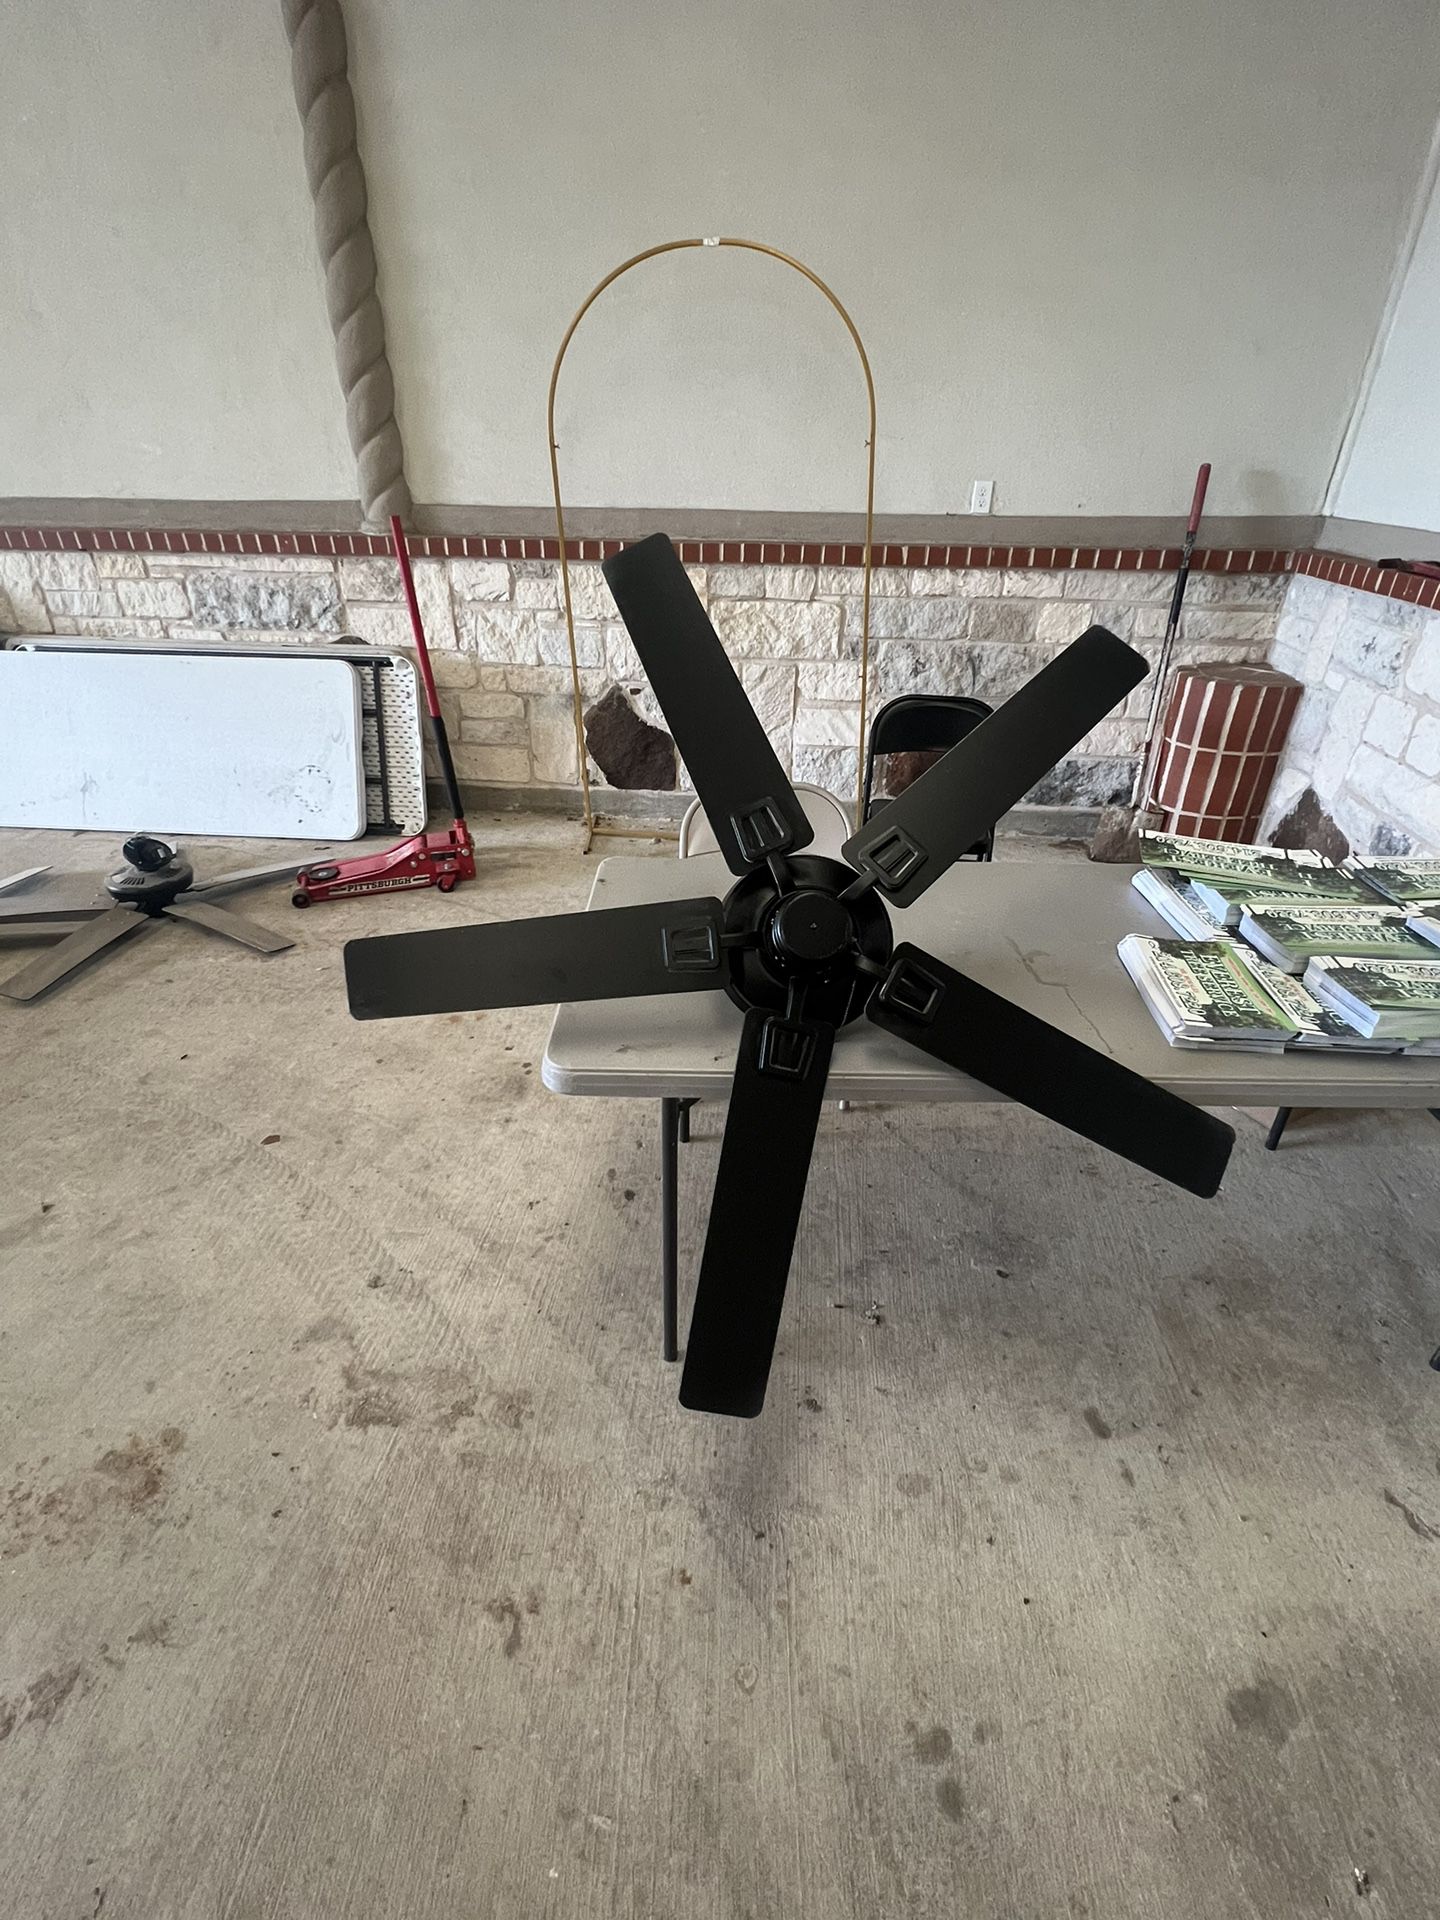 Indoor/Outdoor Ceiling Fan 